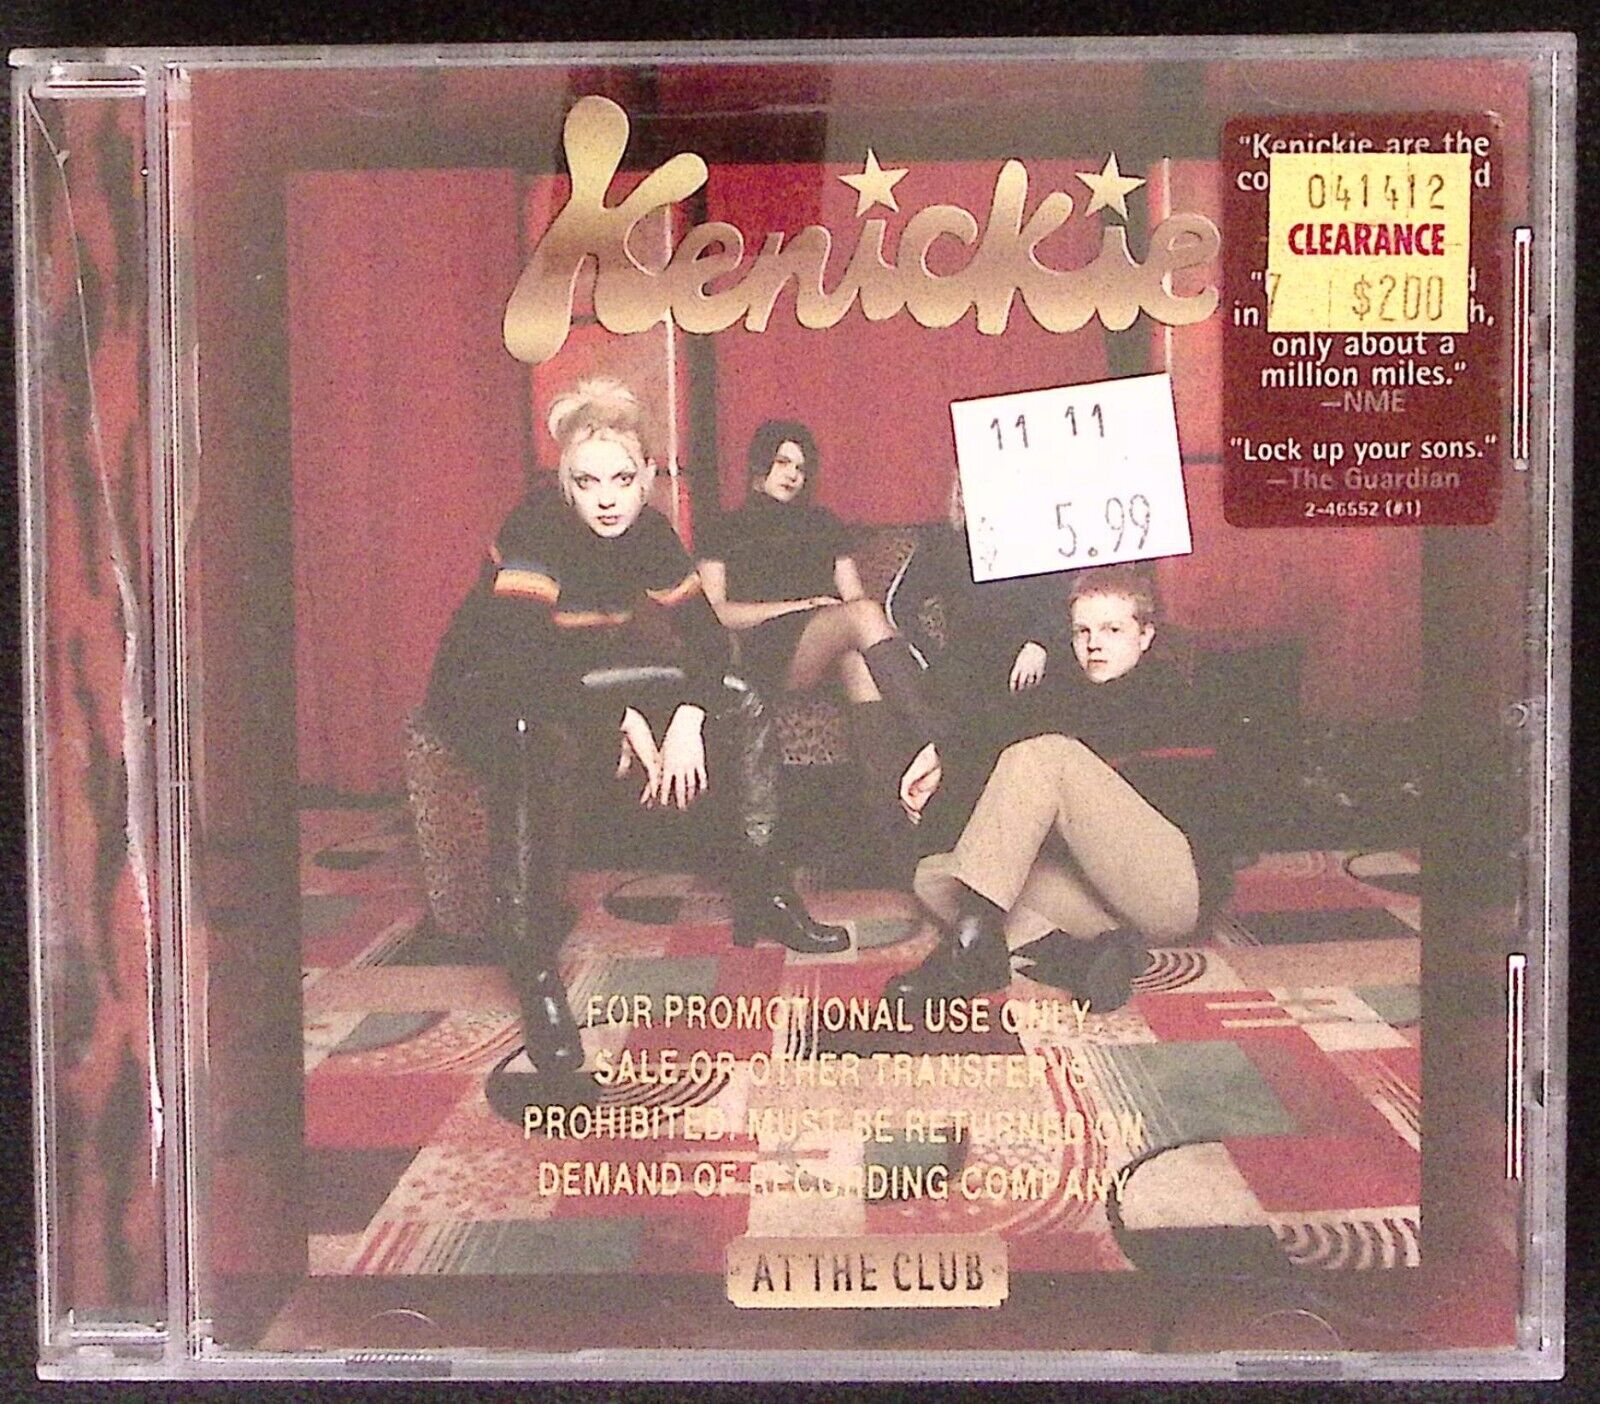 KENICKIE  AT THE CLUB  ROCK BRITPOP  WARNER BROS PROMO  CD 772